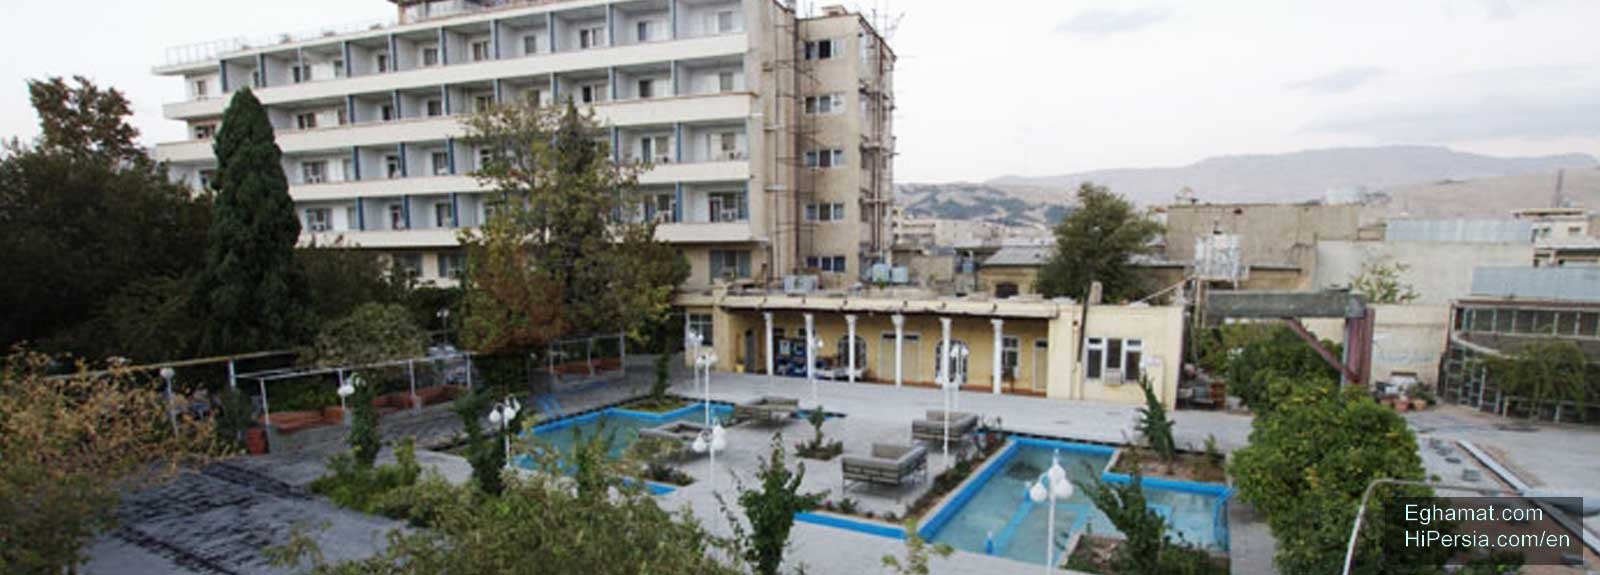 Park Hotel Shiraz-4 stars